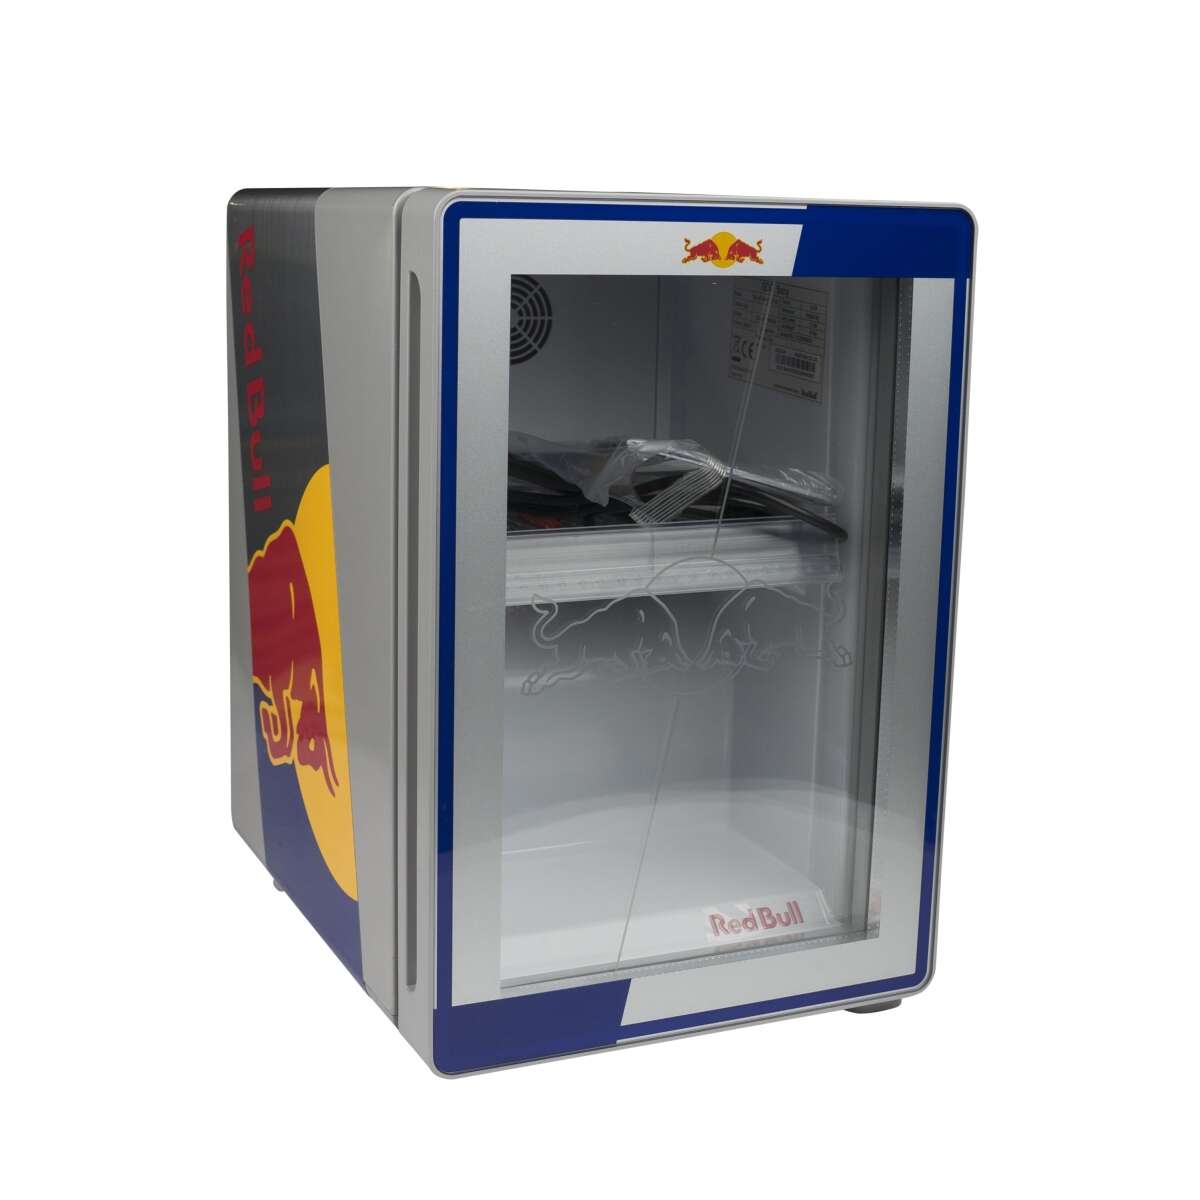 Suchergebnis Auf  Für: Gaming Kühlschrank Red Bull